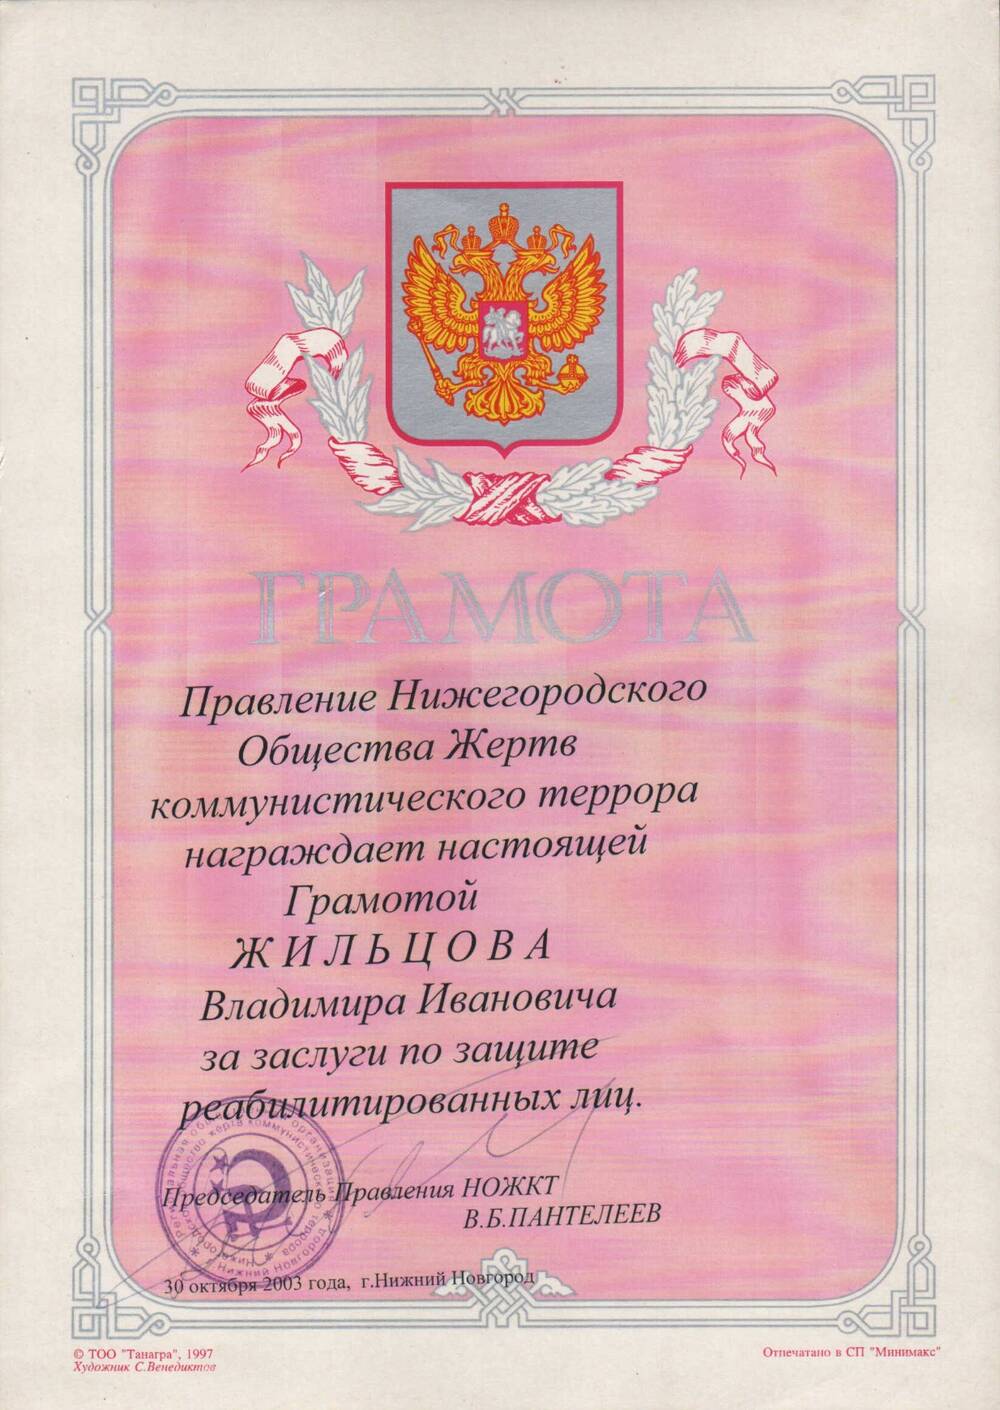 Грамота Жильцова В.И. 2003 г.